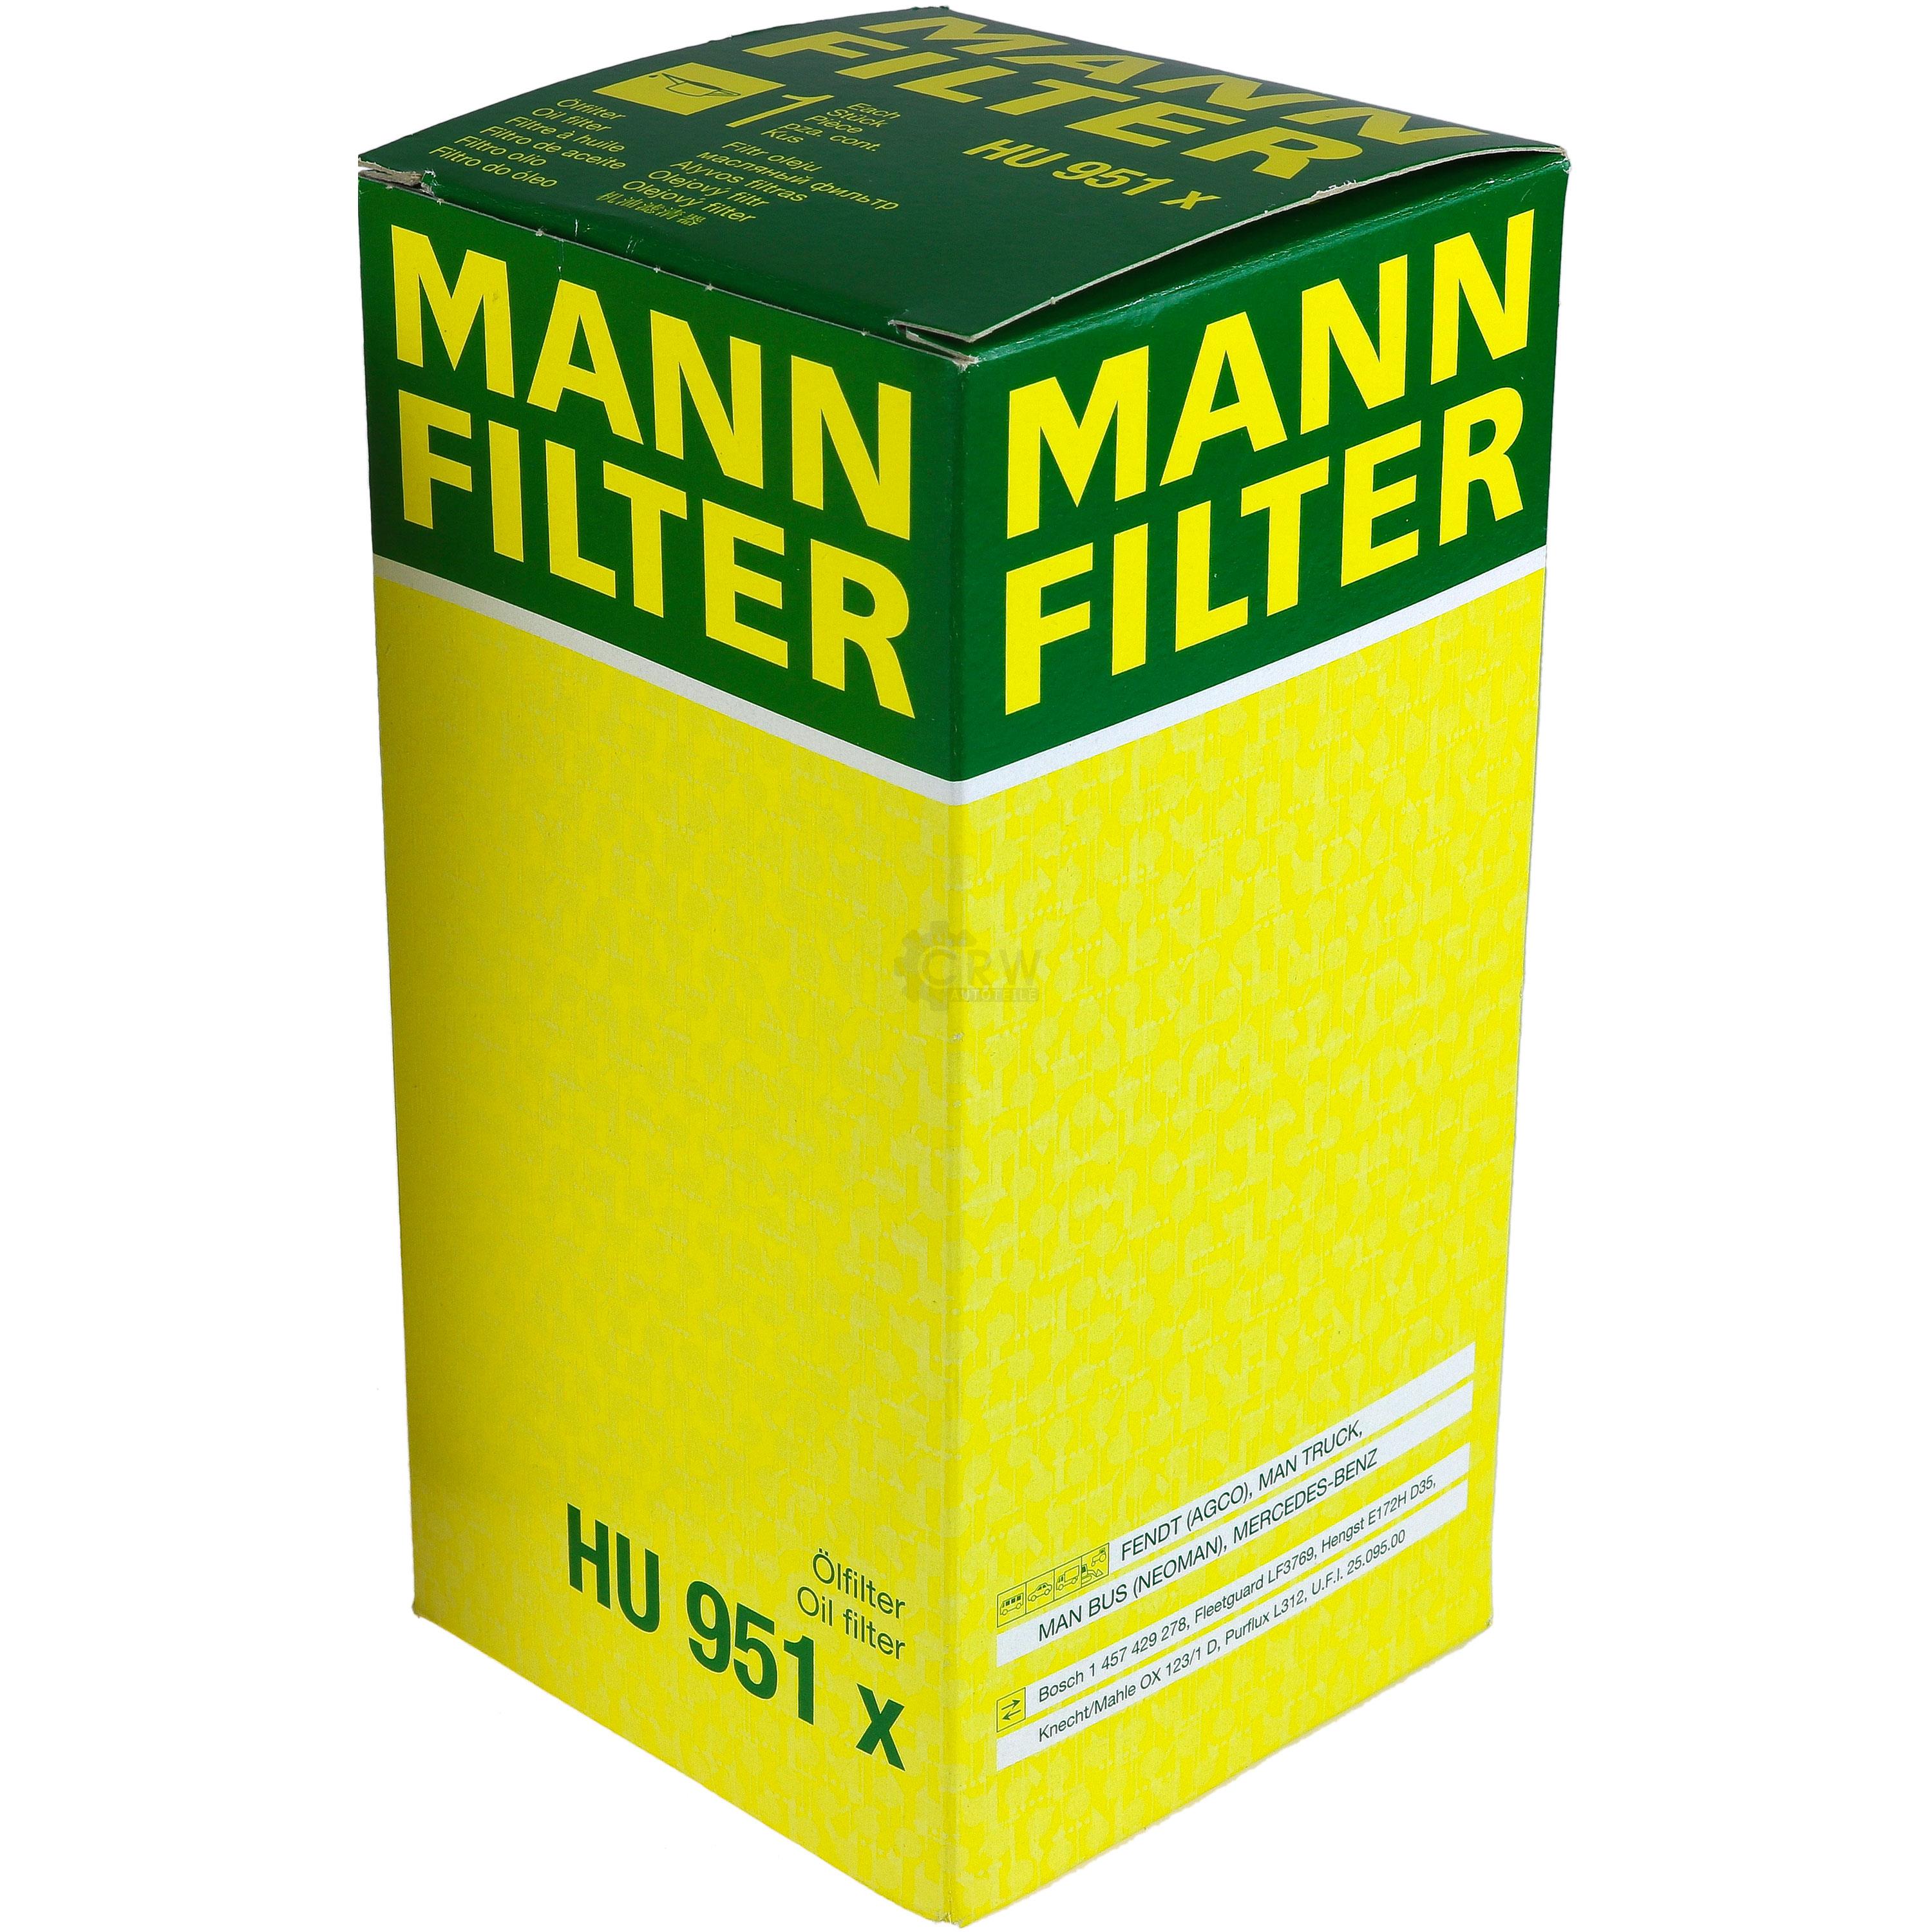 MANN-FILTER Ölfilter HU 951 x Oil Filter